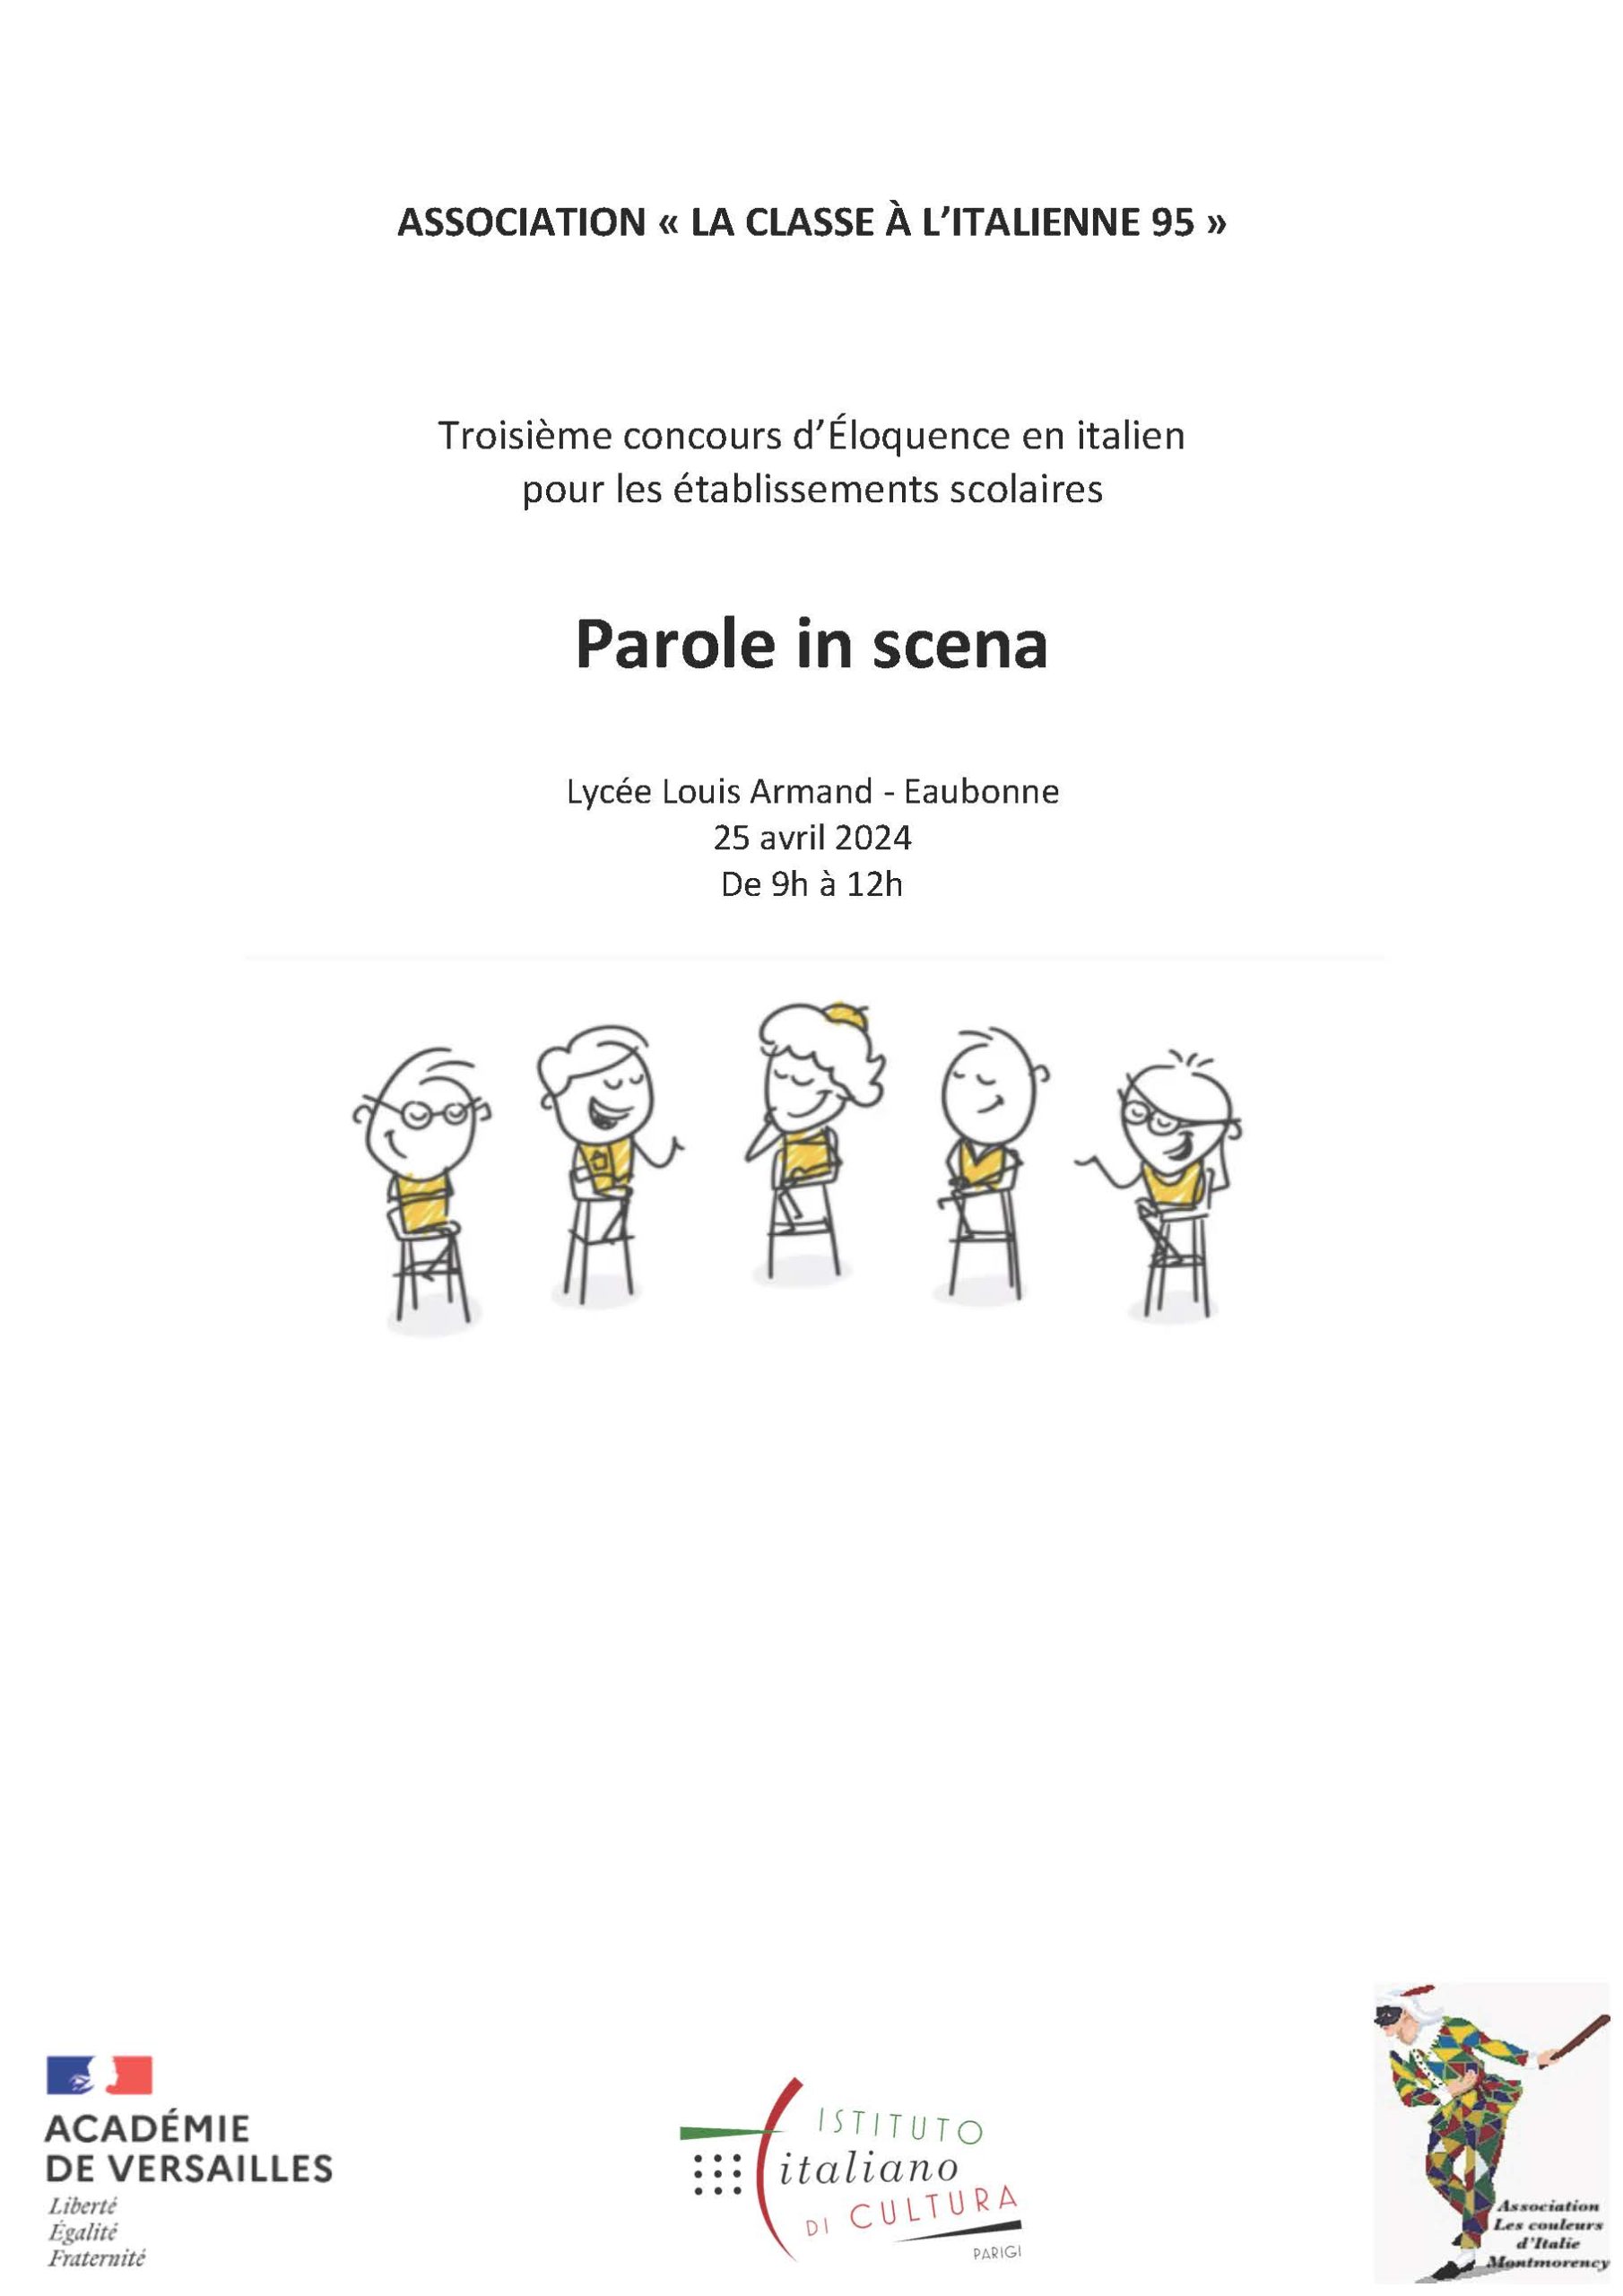 Troisième édition du concours d’éloquence en italien au LLA